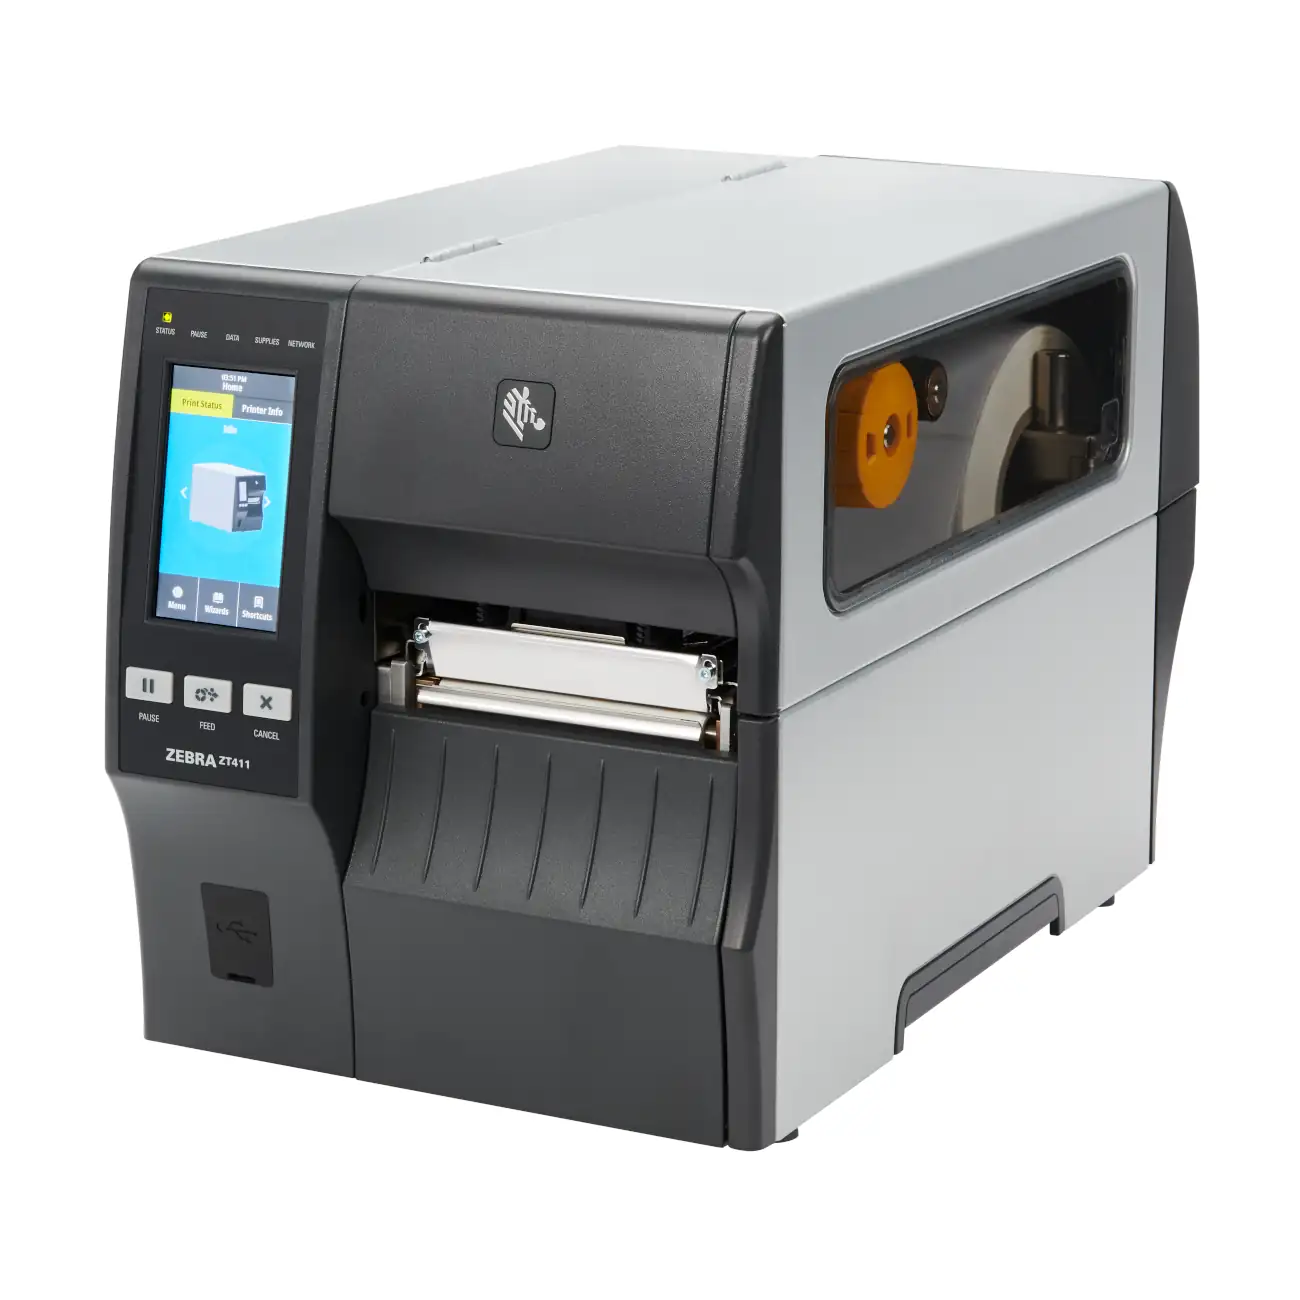 Zebra ZT411 ZT421 Industrial Printer